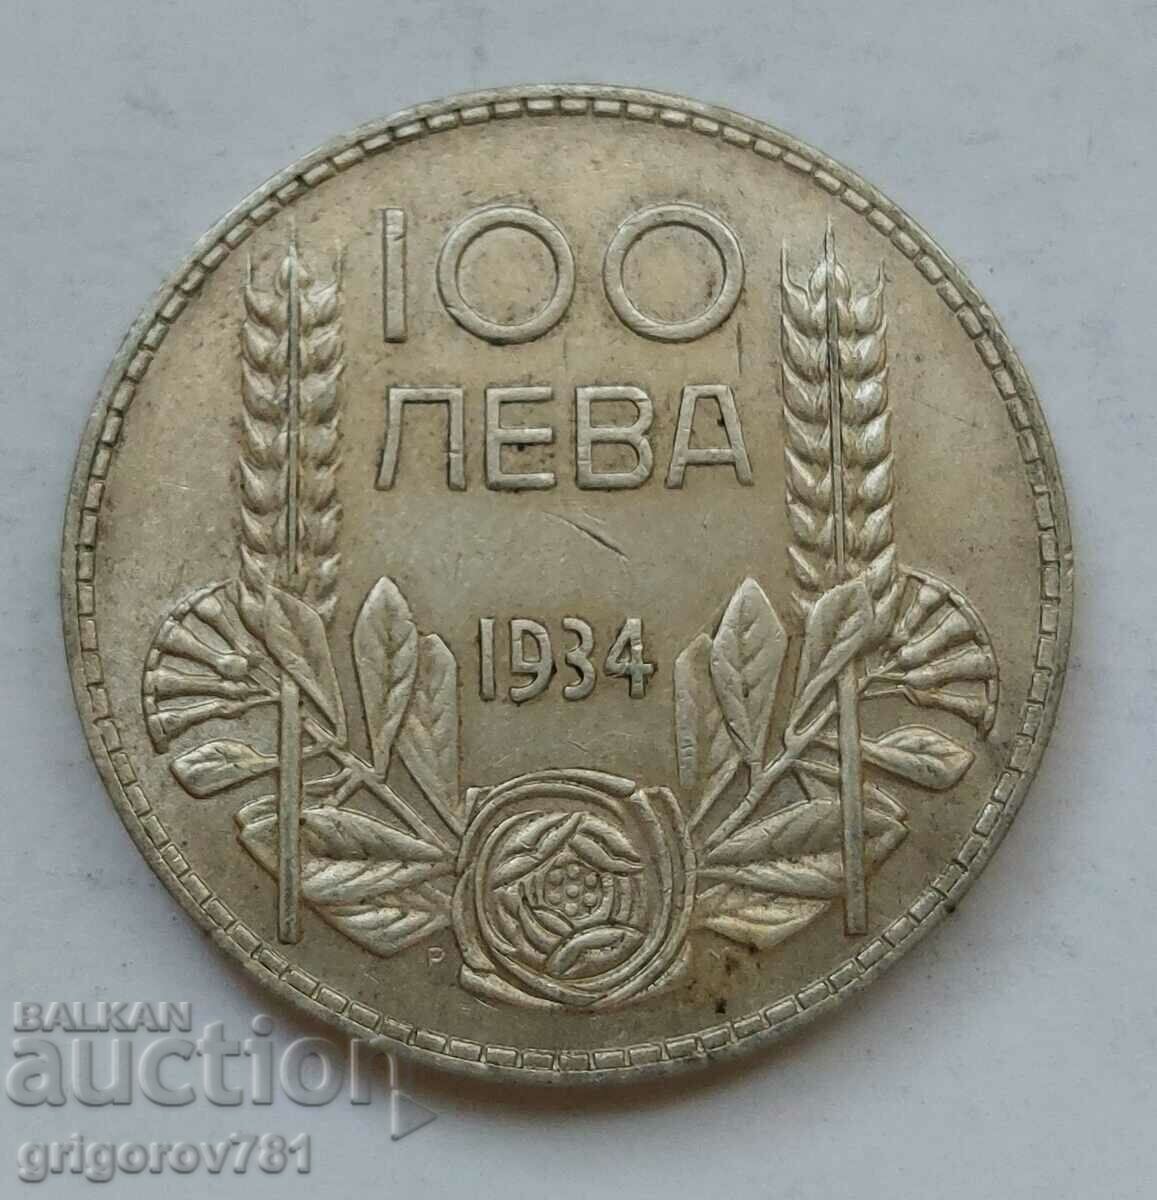 Ασήμι 100 λέβα Βουλγαρία 1934 - ασημένιο νόμισμα #153